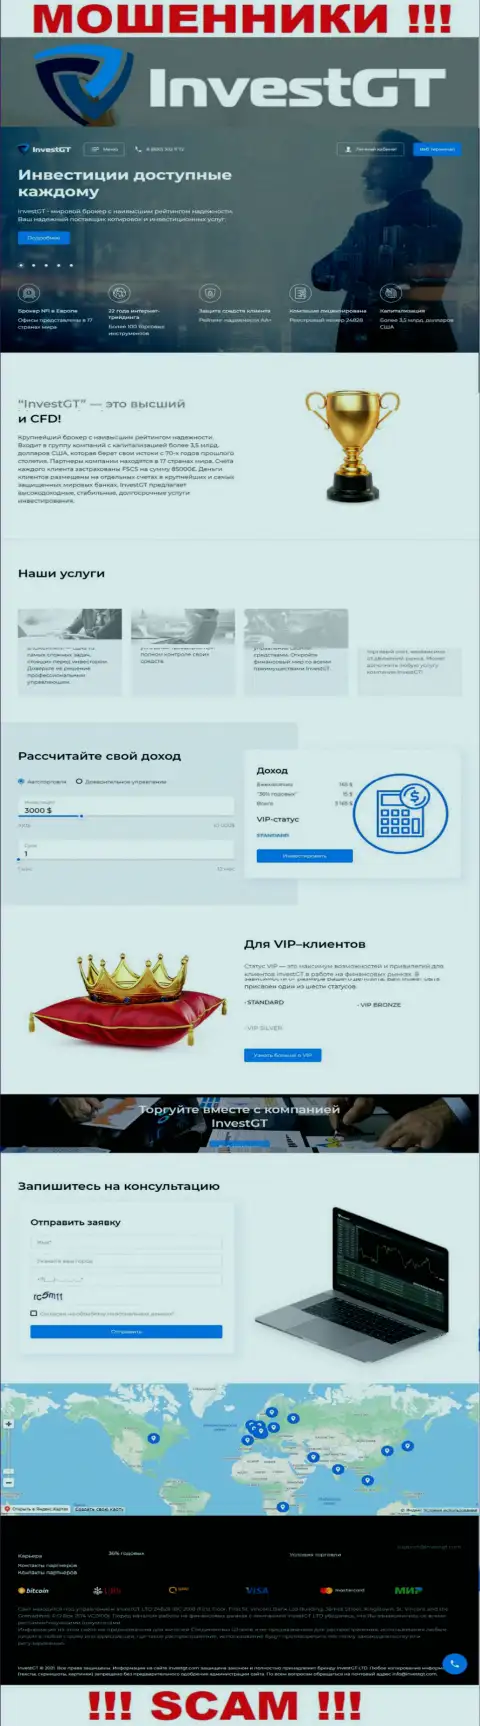 InvestGT Com - это официальная онлайн страница мошенников Инвест ГТ